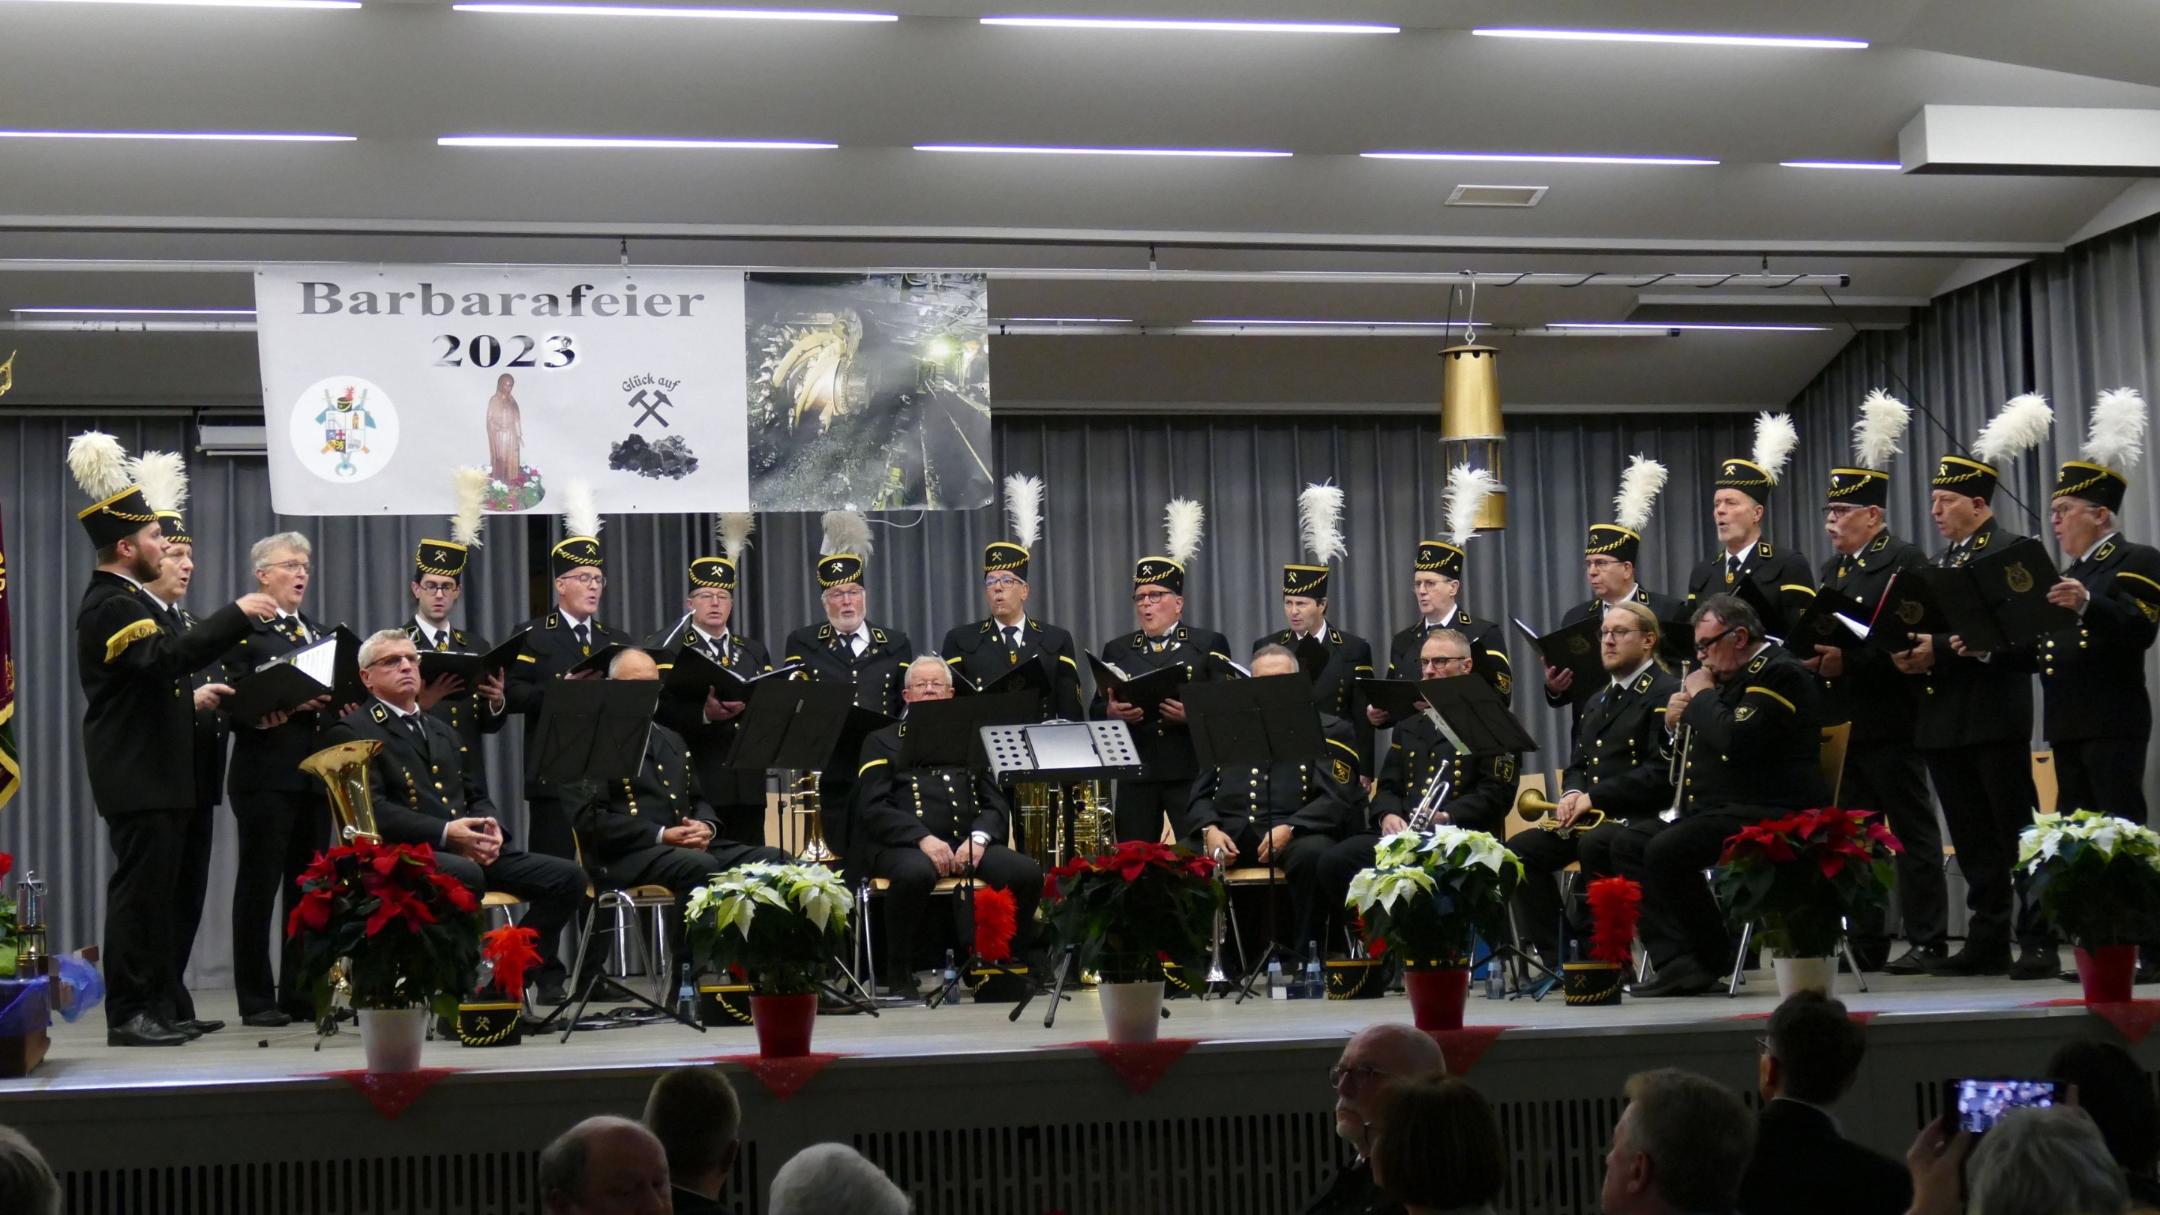 Saarknappenchor und das Brass Ensemble der Bergkapelle spielten bei der Zentralen Barbarafeier.